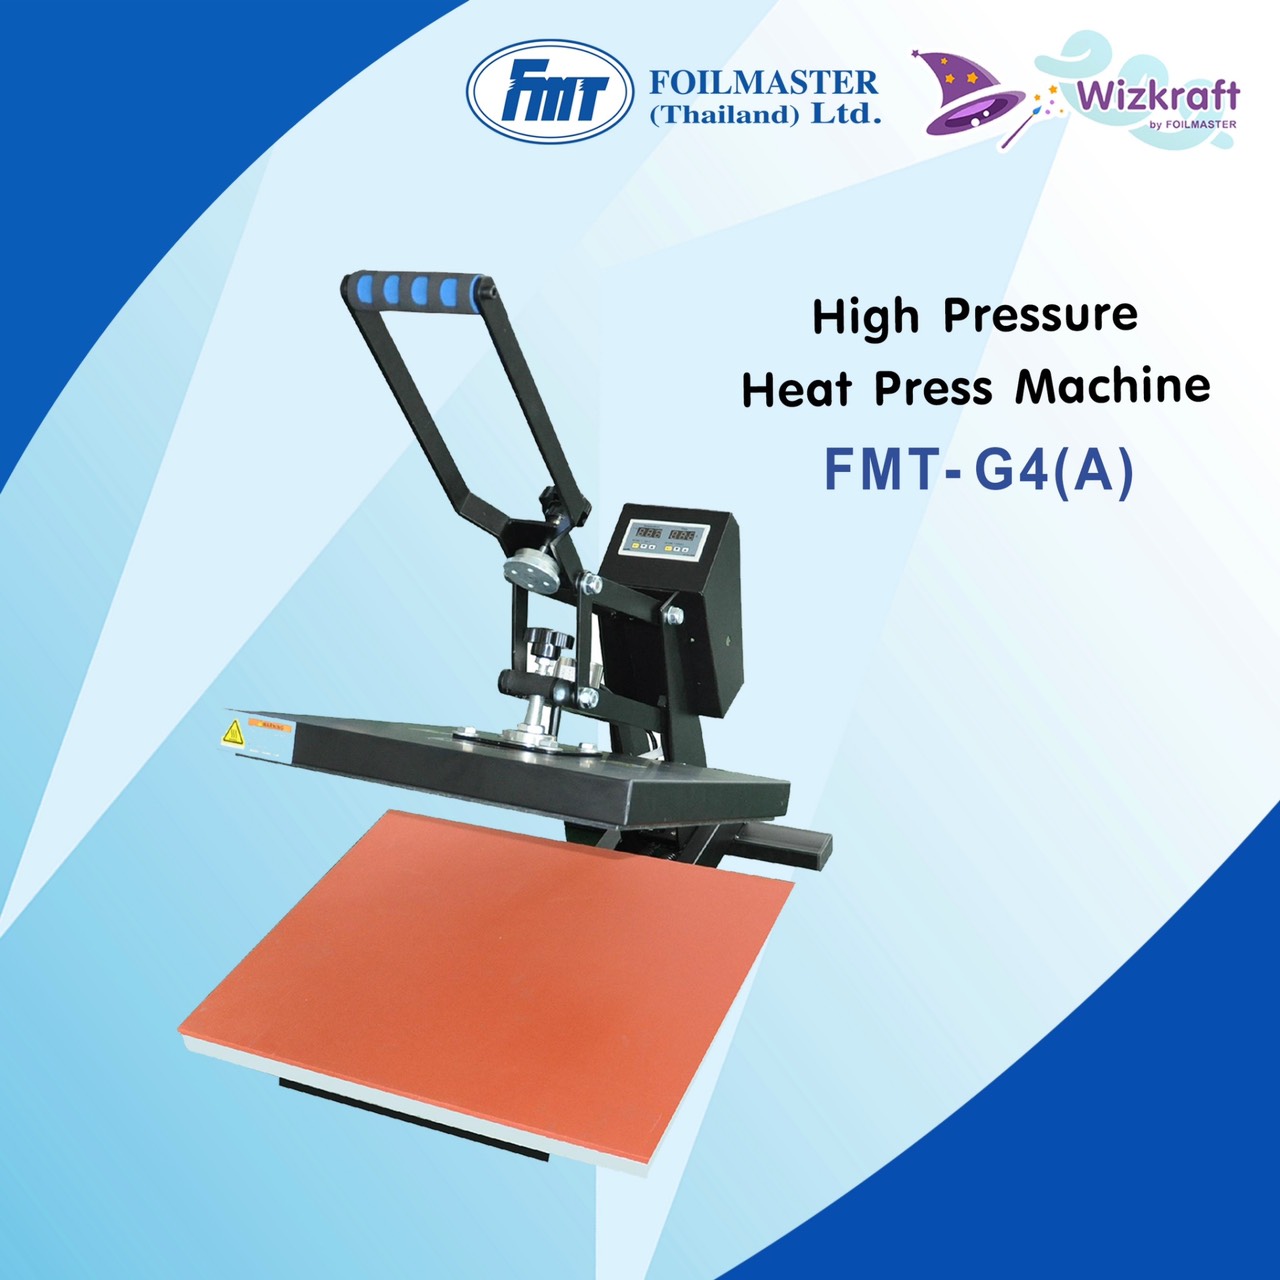 เครื่องรีดความร้อน High Pressure Heat Press Machine รุ่น : FMT-G4(A)